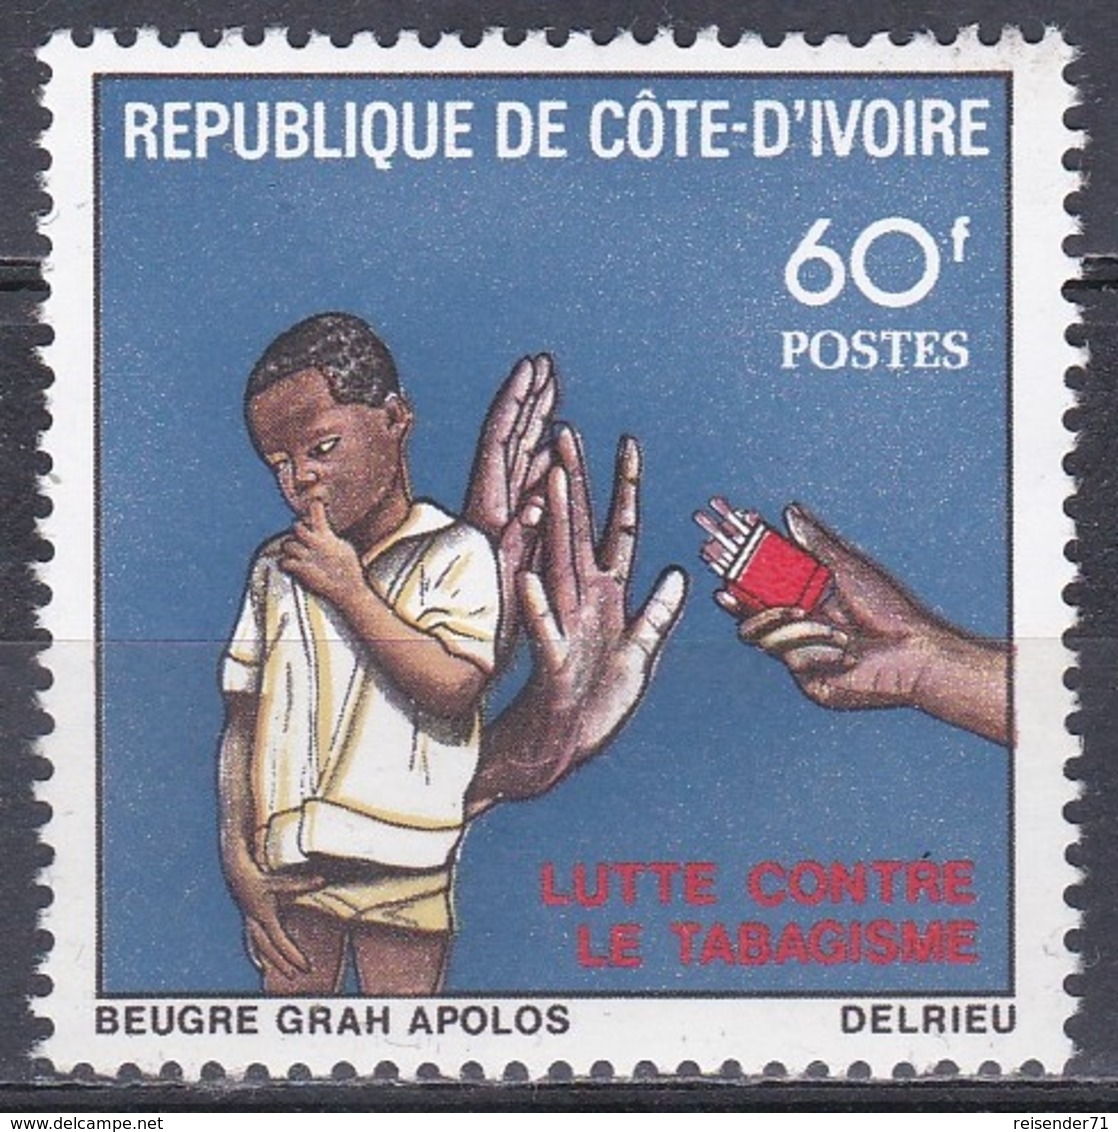 Elfenbeinküste Ivory Coast Cote D'Ivoire 1980 UNO ONU WHO Welt-Gesundheitstag Health Rauchen Smoking, Mi. 640 ** - Côte D'Ivoire (1960-...)